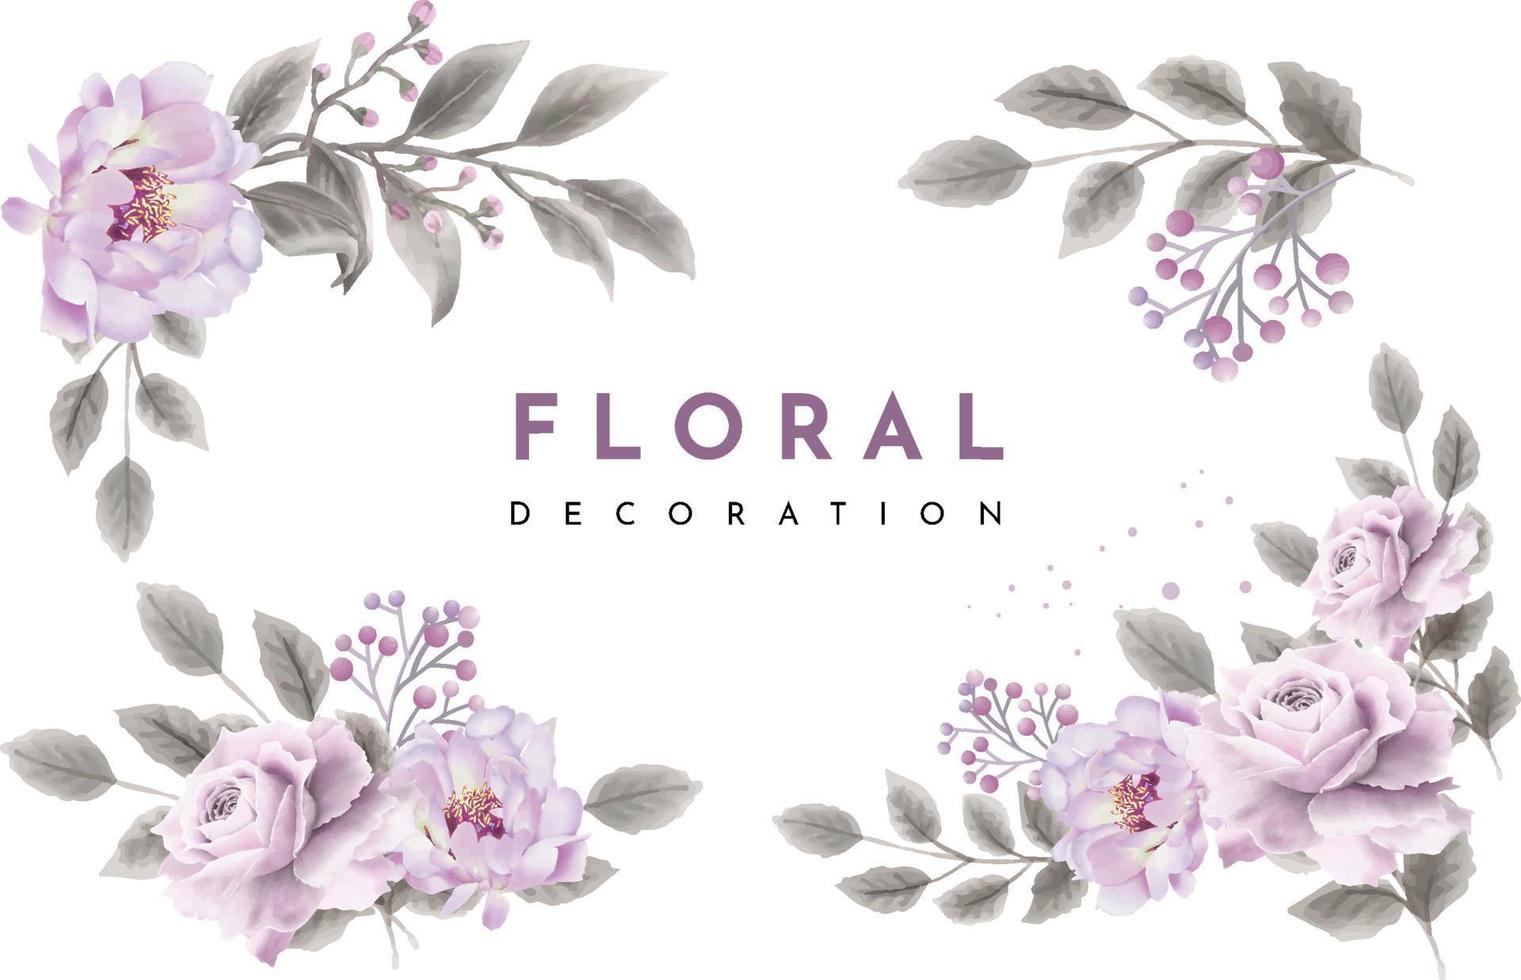 ensemble de bouquets de cadre floral aquarelle et décoration vecteur